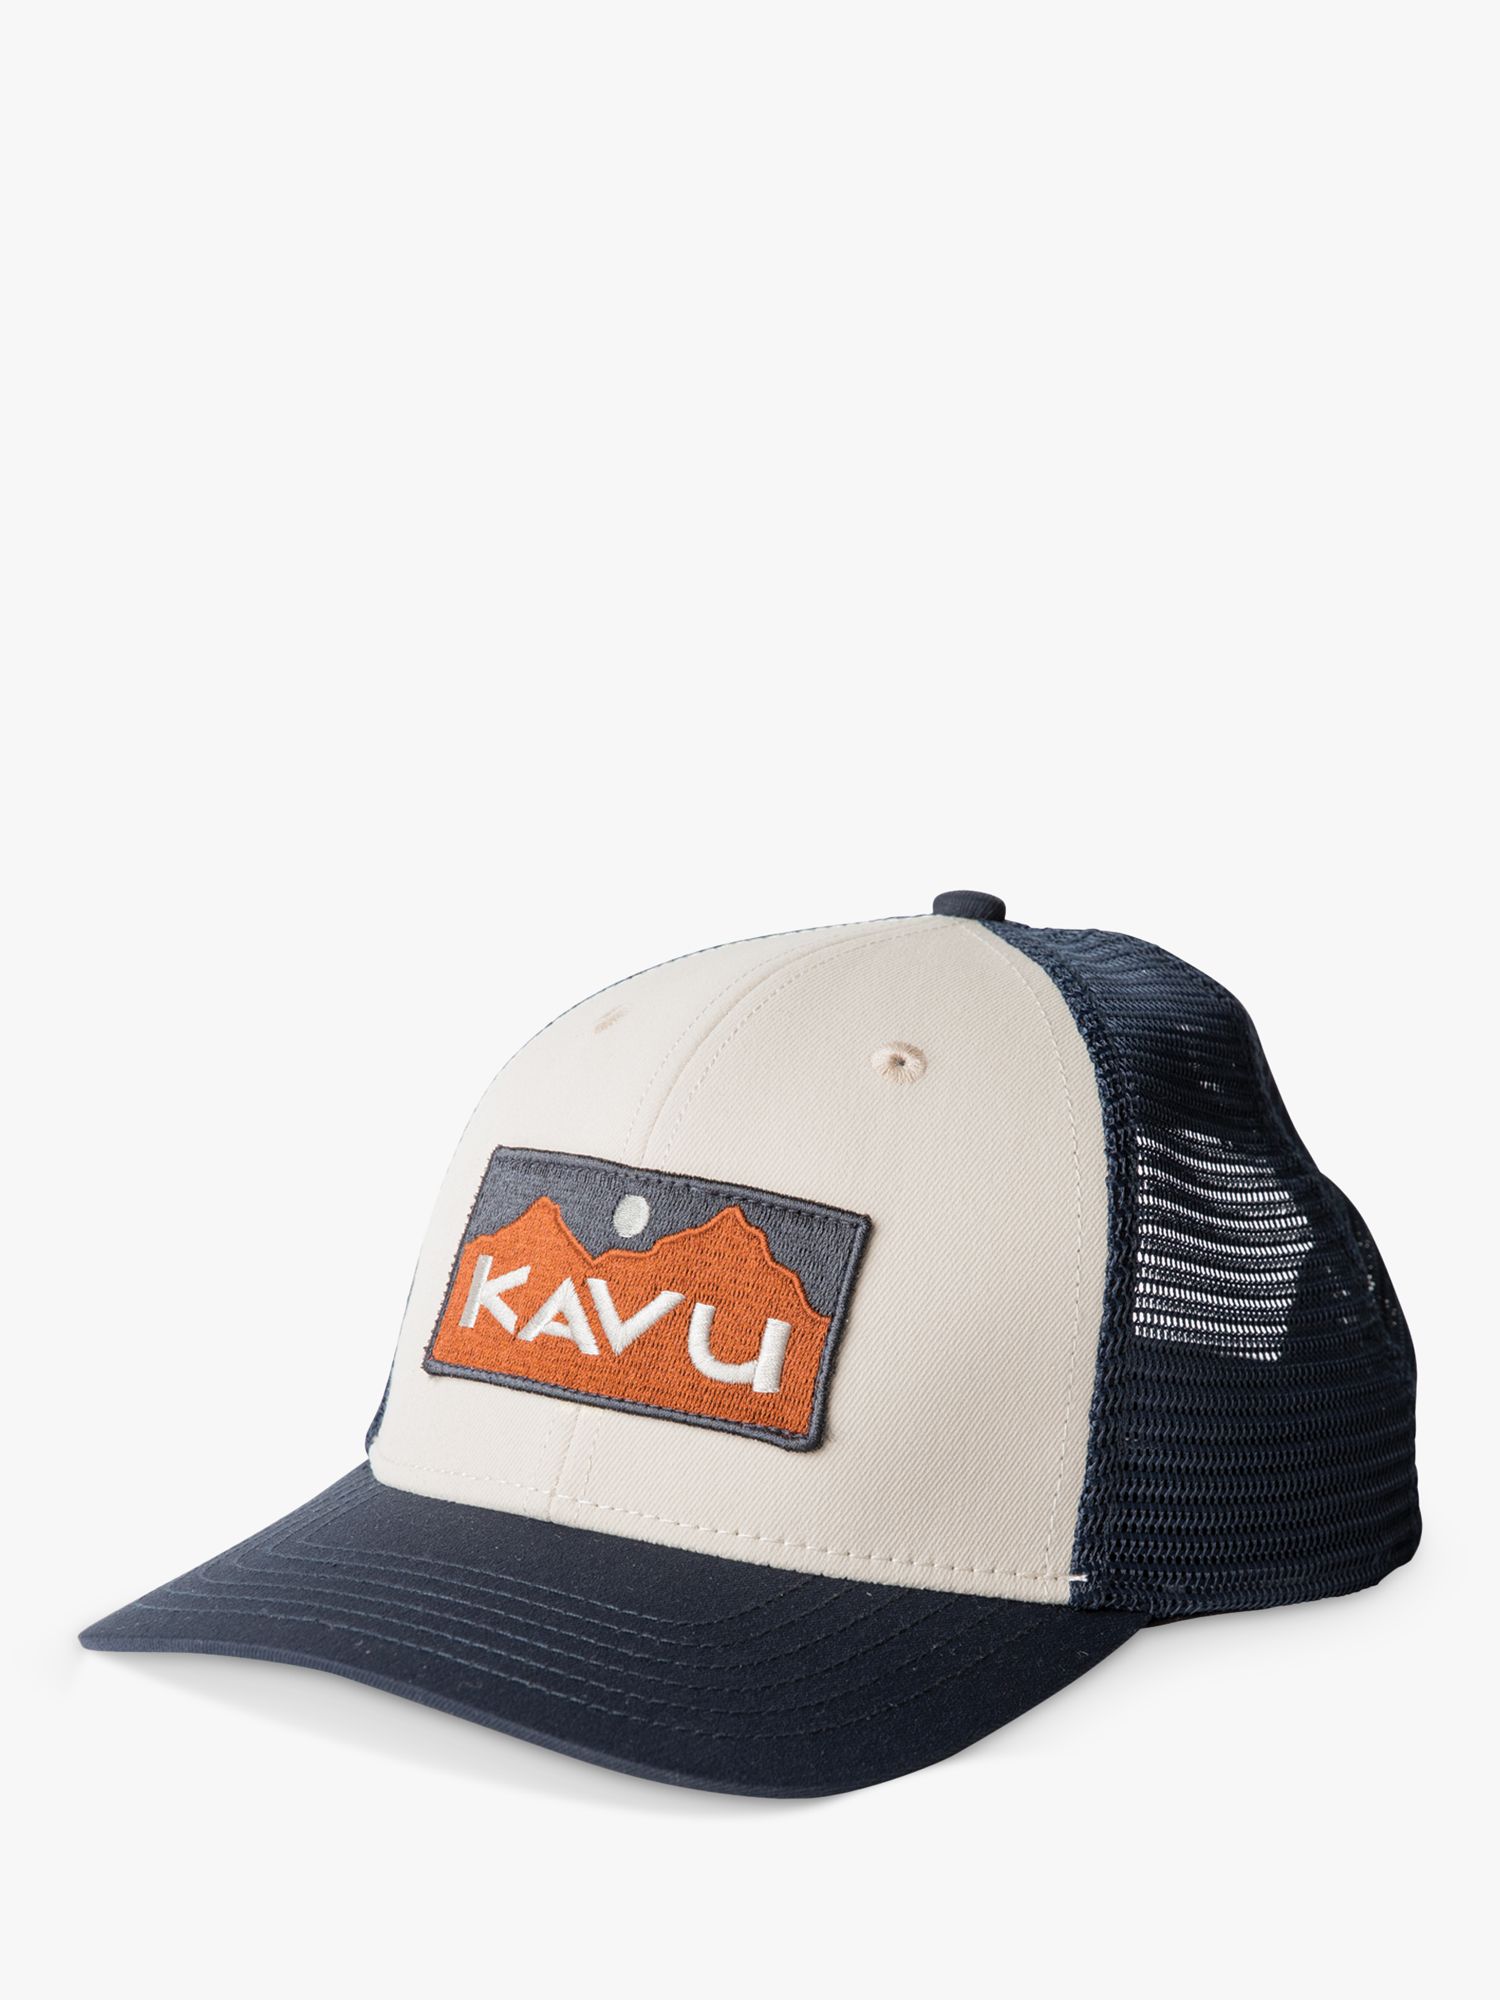 KAVU Above Standard Hat, Blue/Multi, One Size